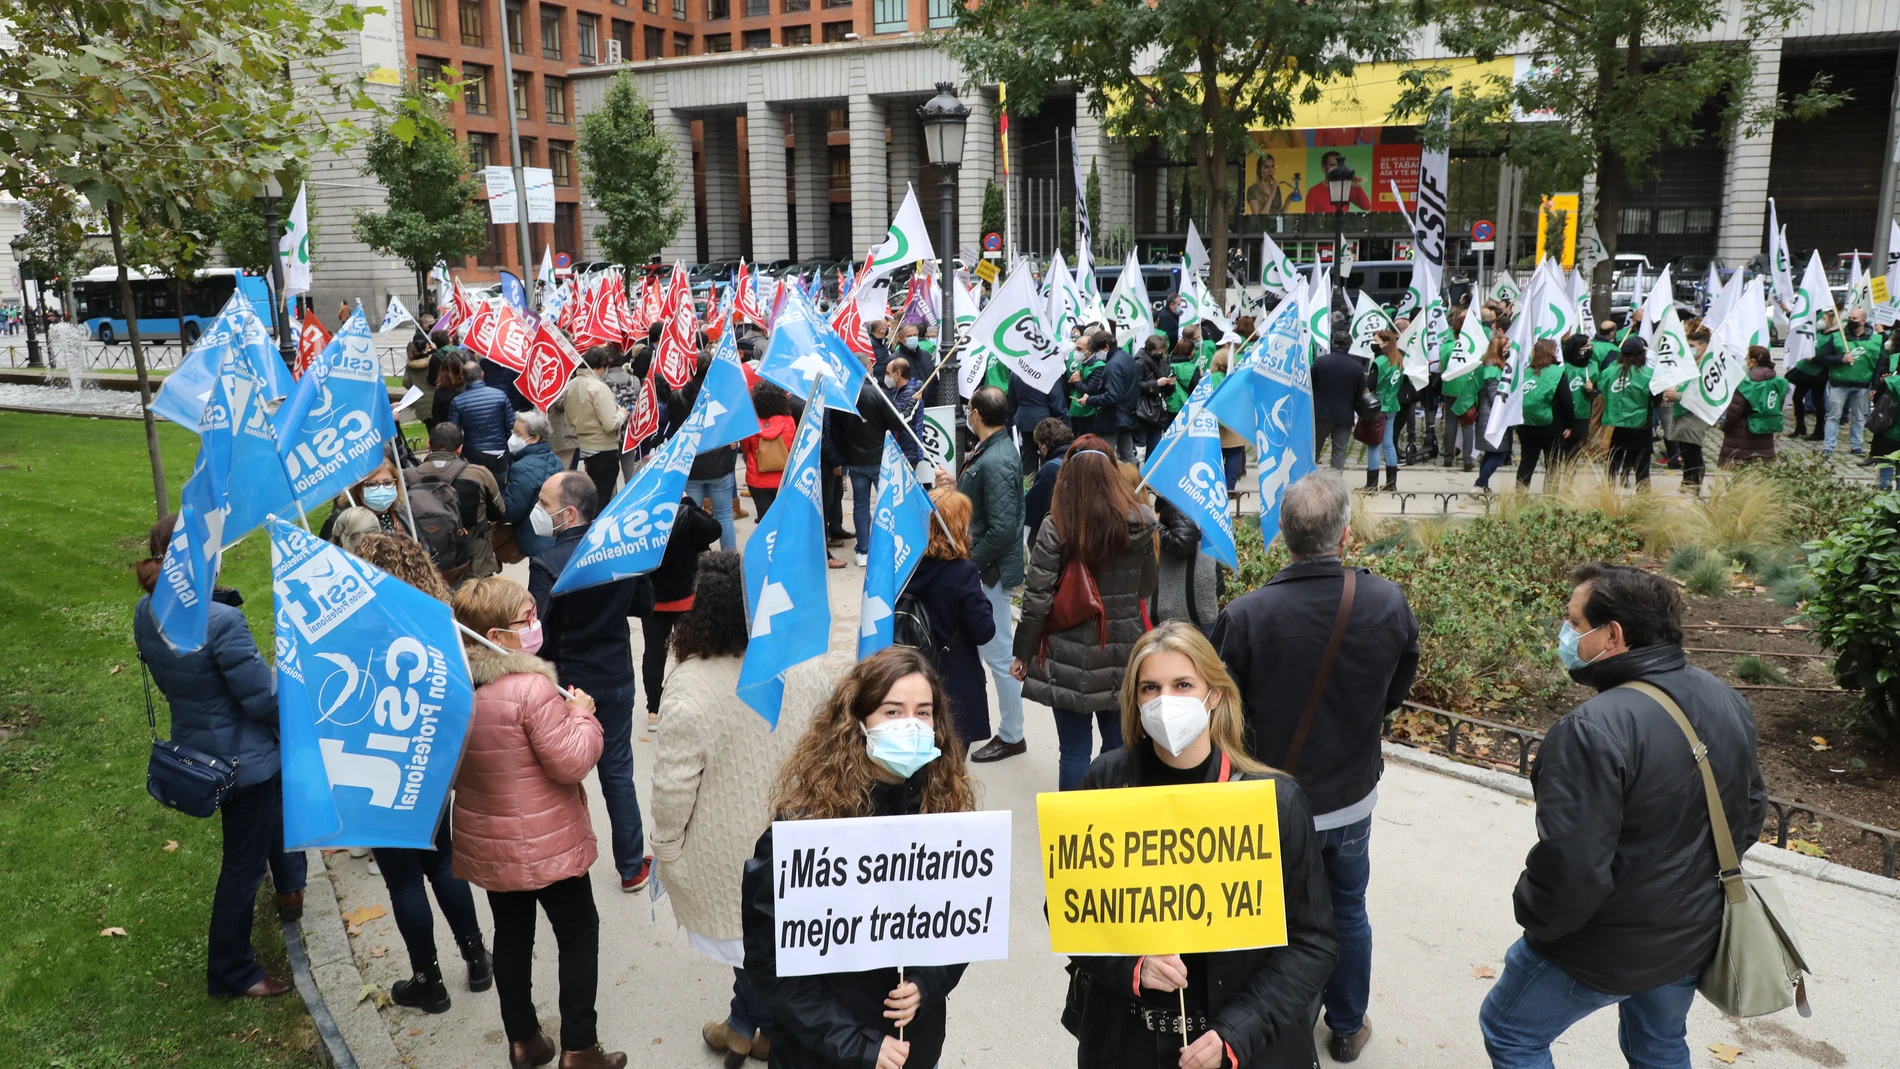 Vista de la manifestación en frente de las puertas del Ministerio de Sanidad en Madrid el jueves, convocada por la Central Sindical Independiente de Funcionarios (CSIF), por una sanidad pública que dignifique a los profesionales sanitarios.